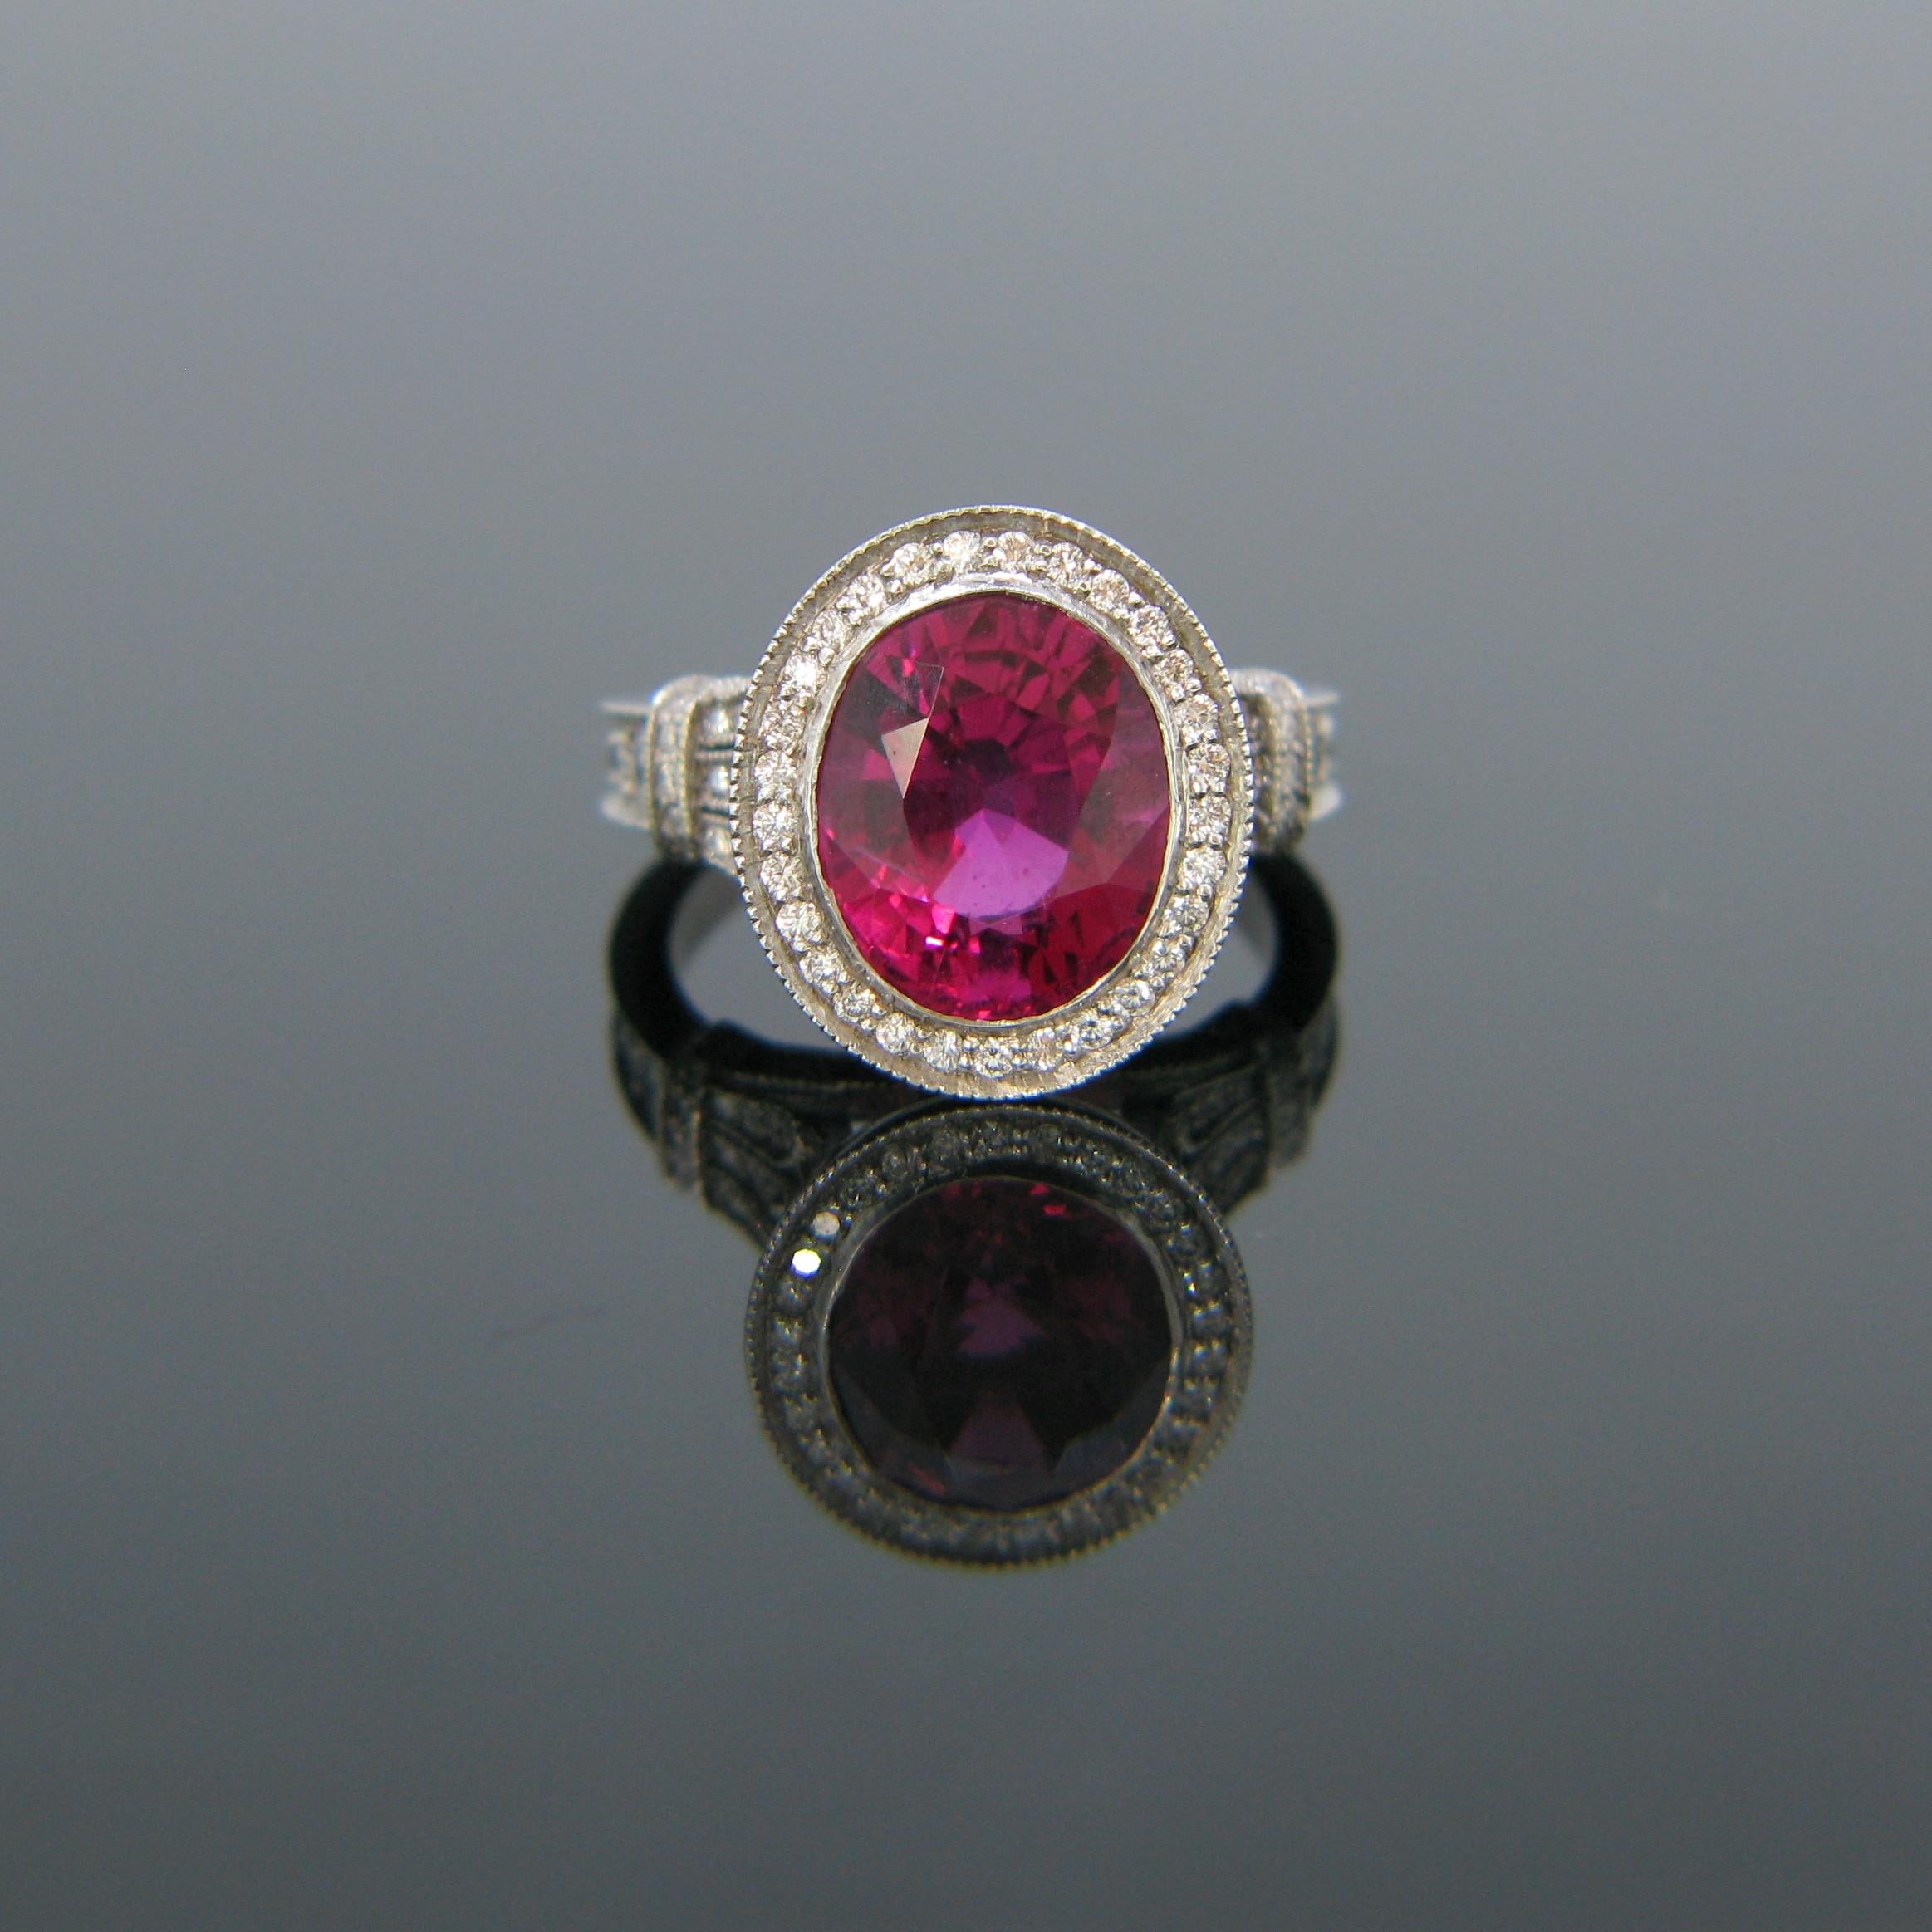 Bei diesem neuen Ring handelt es sich um einen rosafarbenen Rubellit-Turmalin von leuchtender Farbe mit einem Gewicht von 5,40ct. Der Ring ist aus 18-karätigem Weißgold gefertigt und hat 133 runde Diamanten mit Brillantschliff auf der Fassung. Der